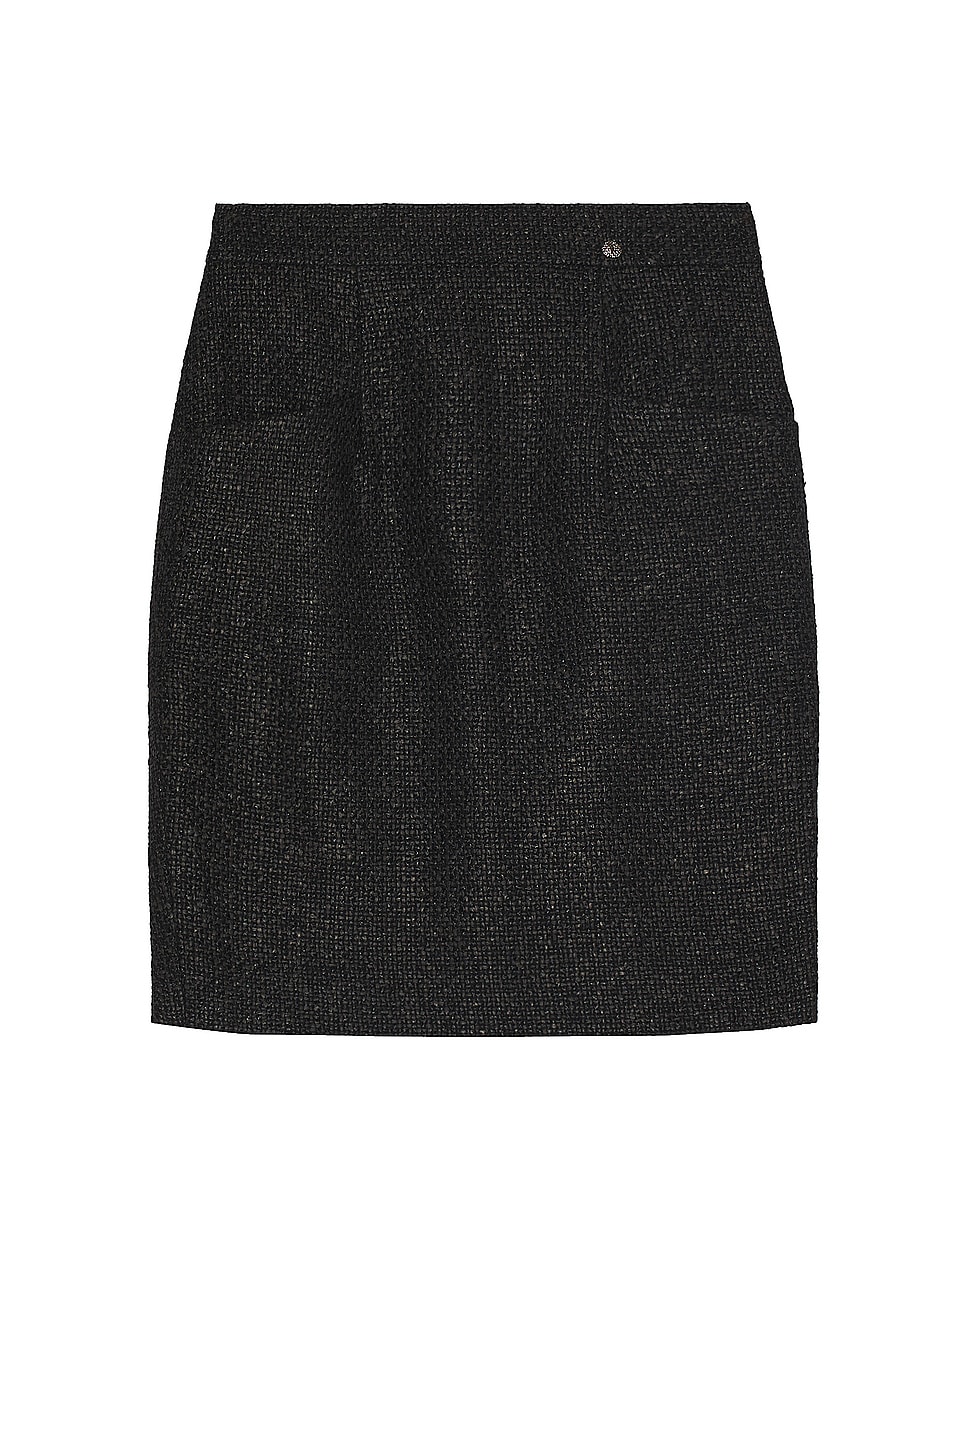 Image 1 of FWRD Renew Chanel Tweed Skirt in Black